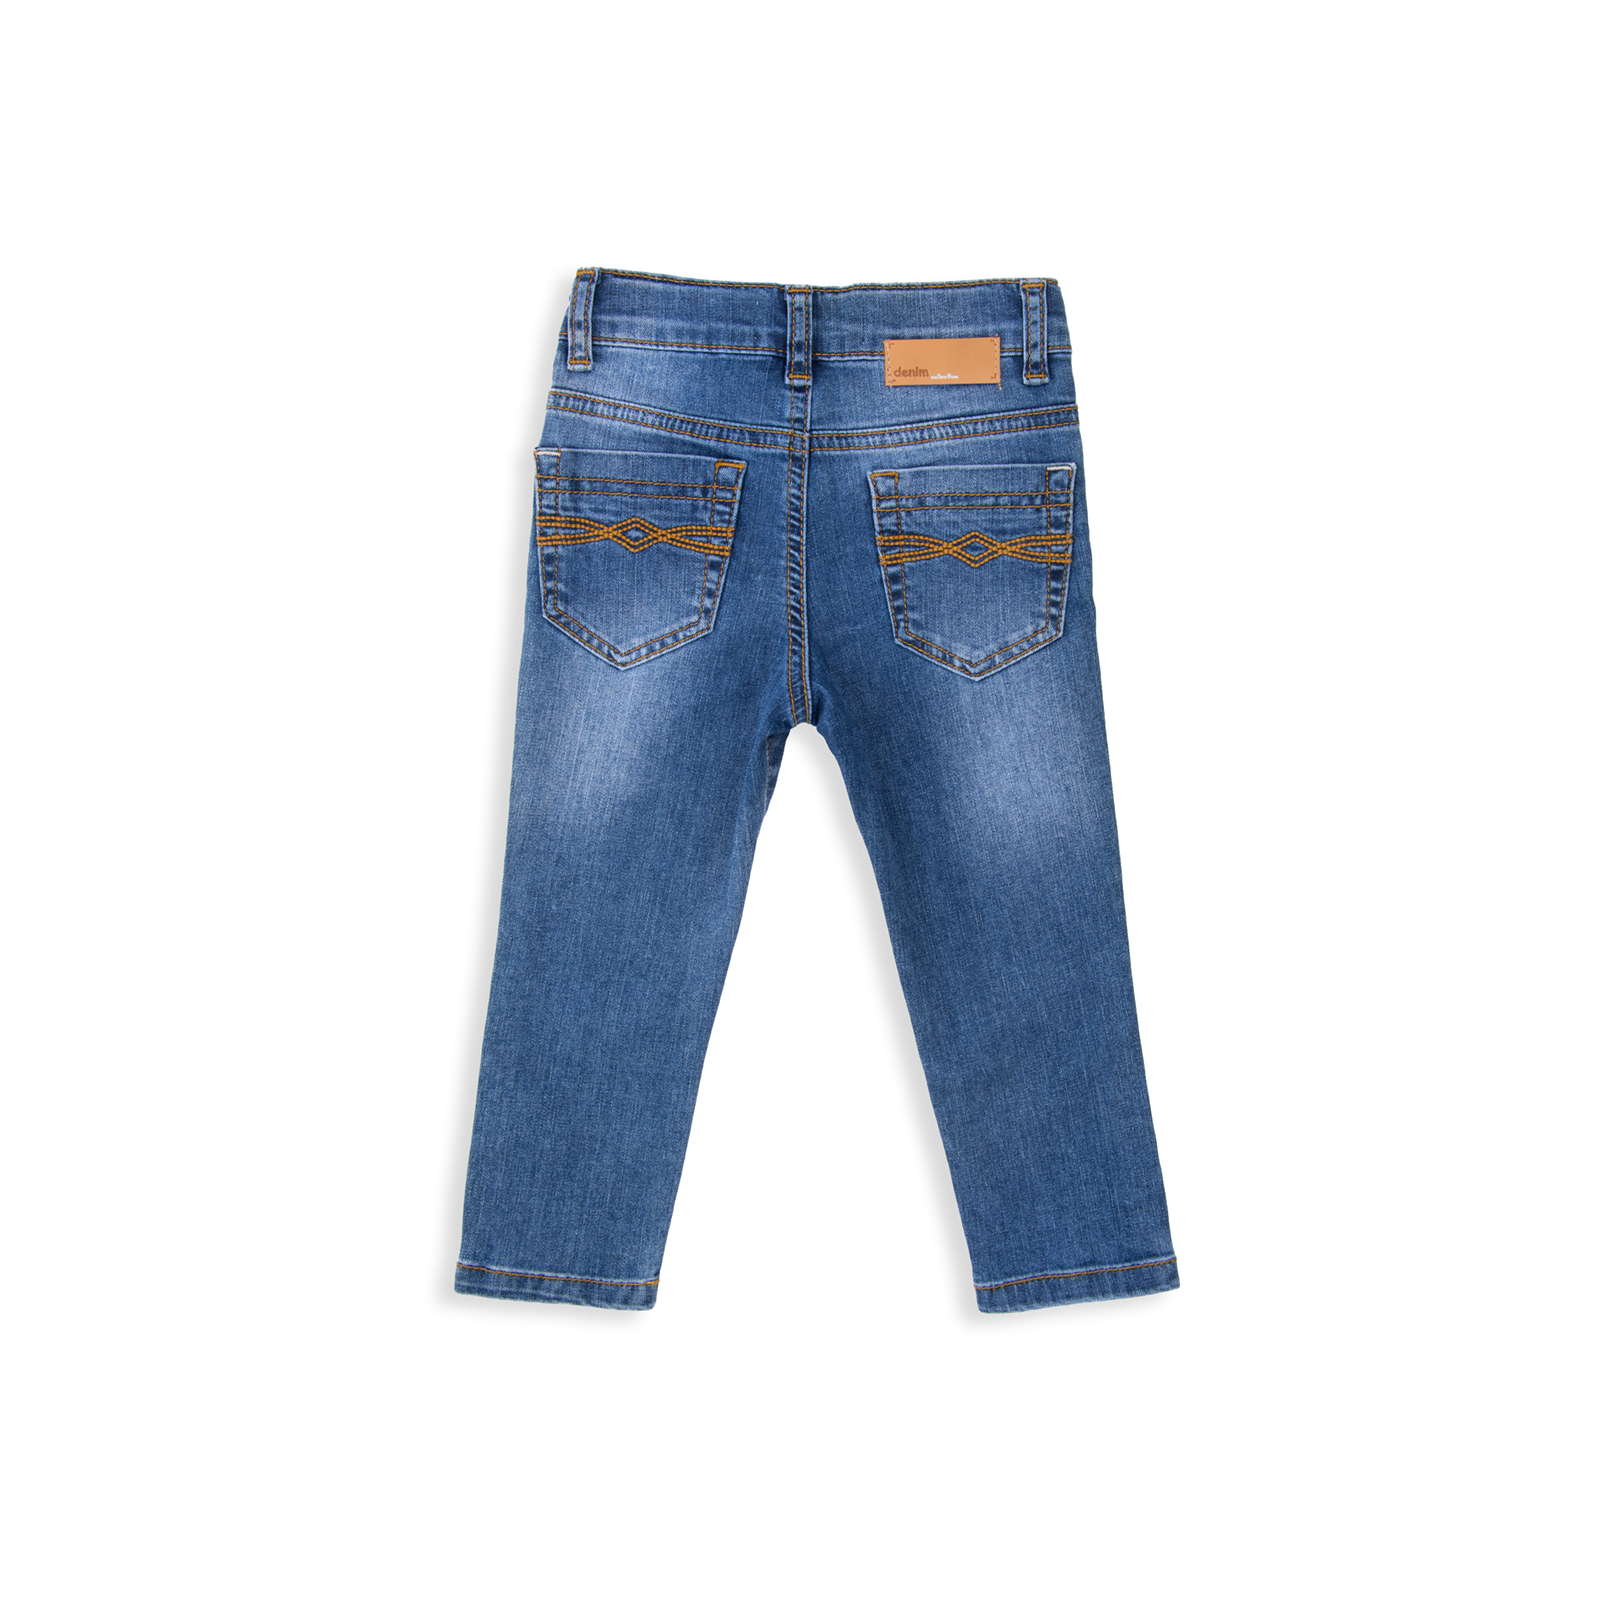 Джинсы Breeze синие (15YECPAN371-74B-jeans) изображение 2